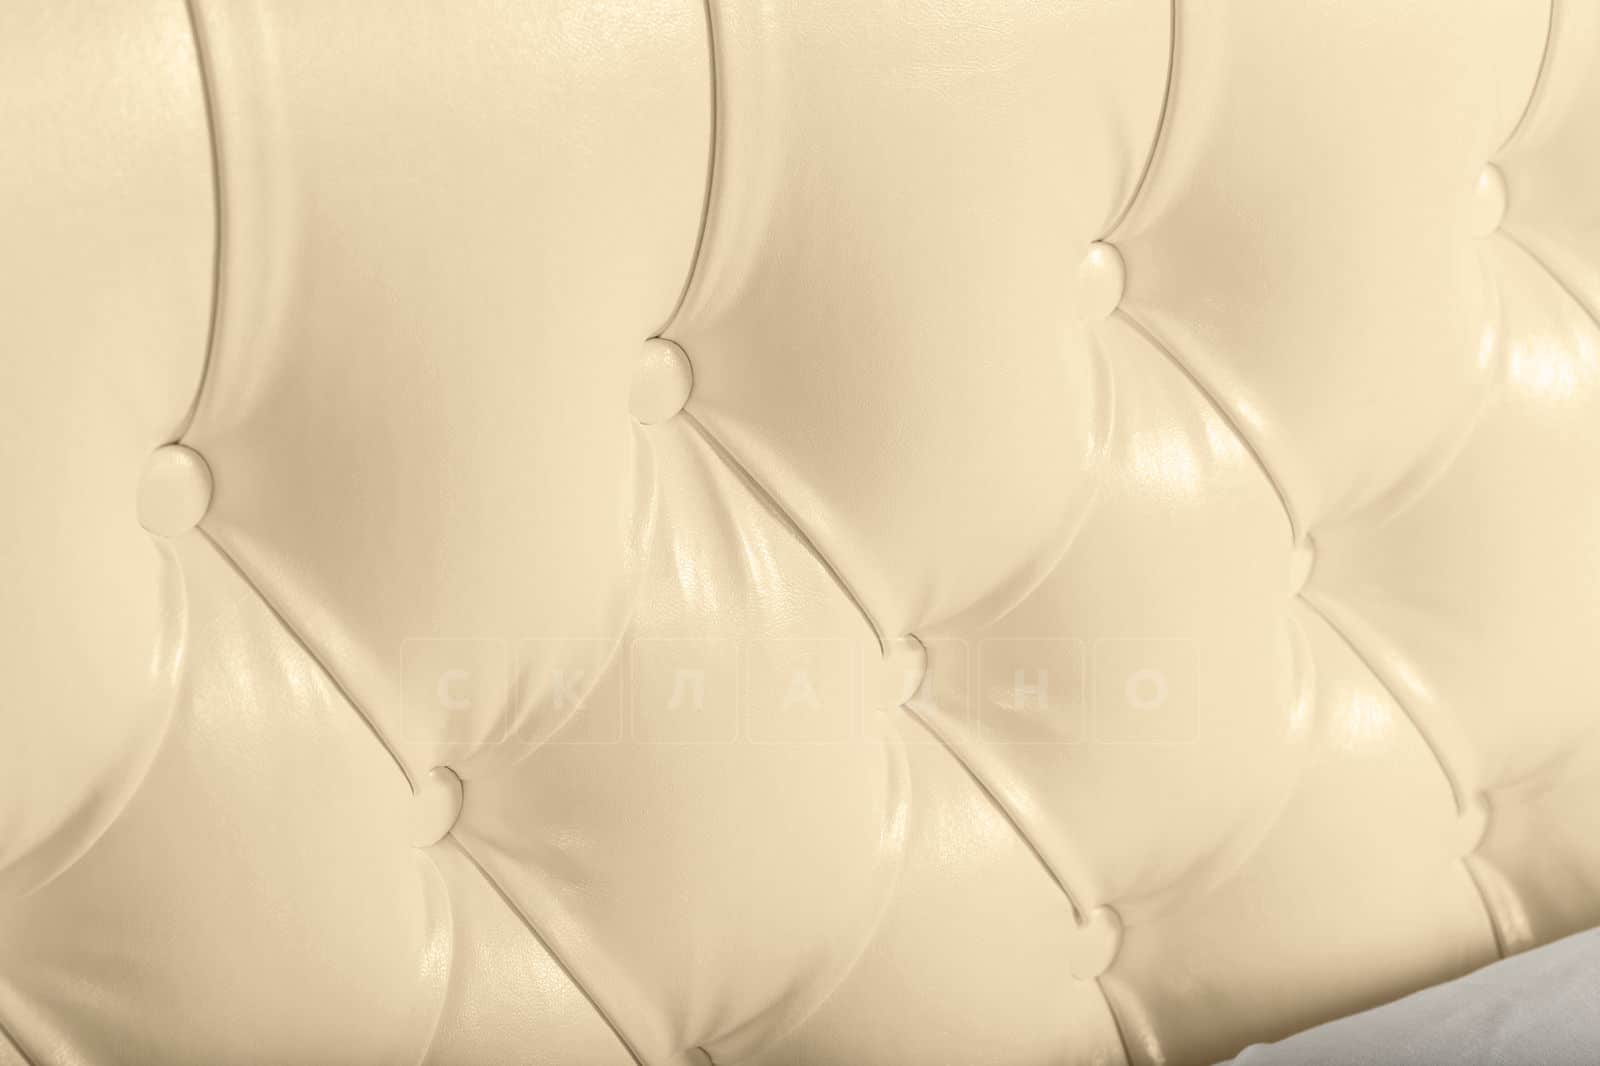 Мягкая кровать Малибу 160 см экокожа бежевого цвета вариант 1-2 фото 8 | интернет-магазин Складно